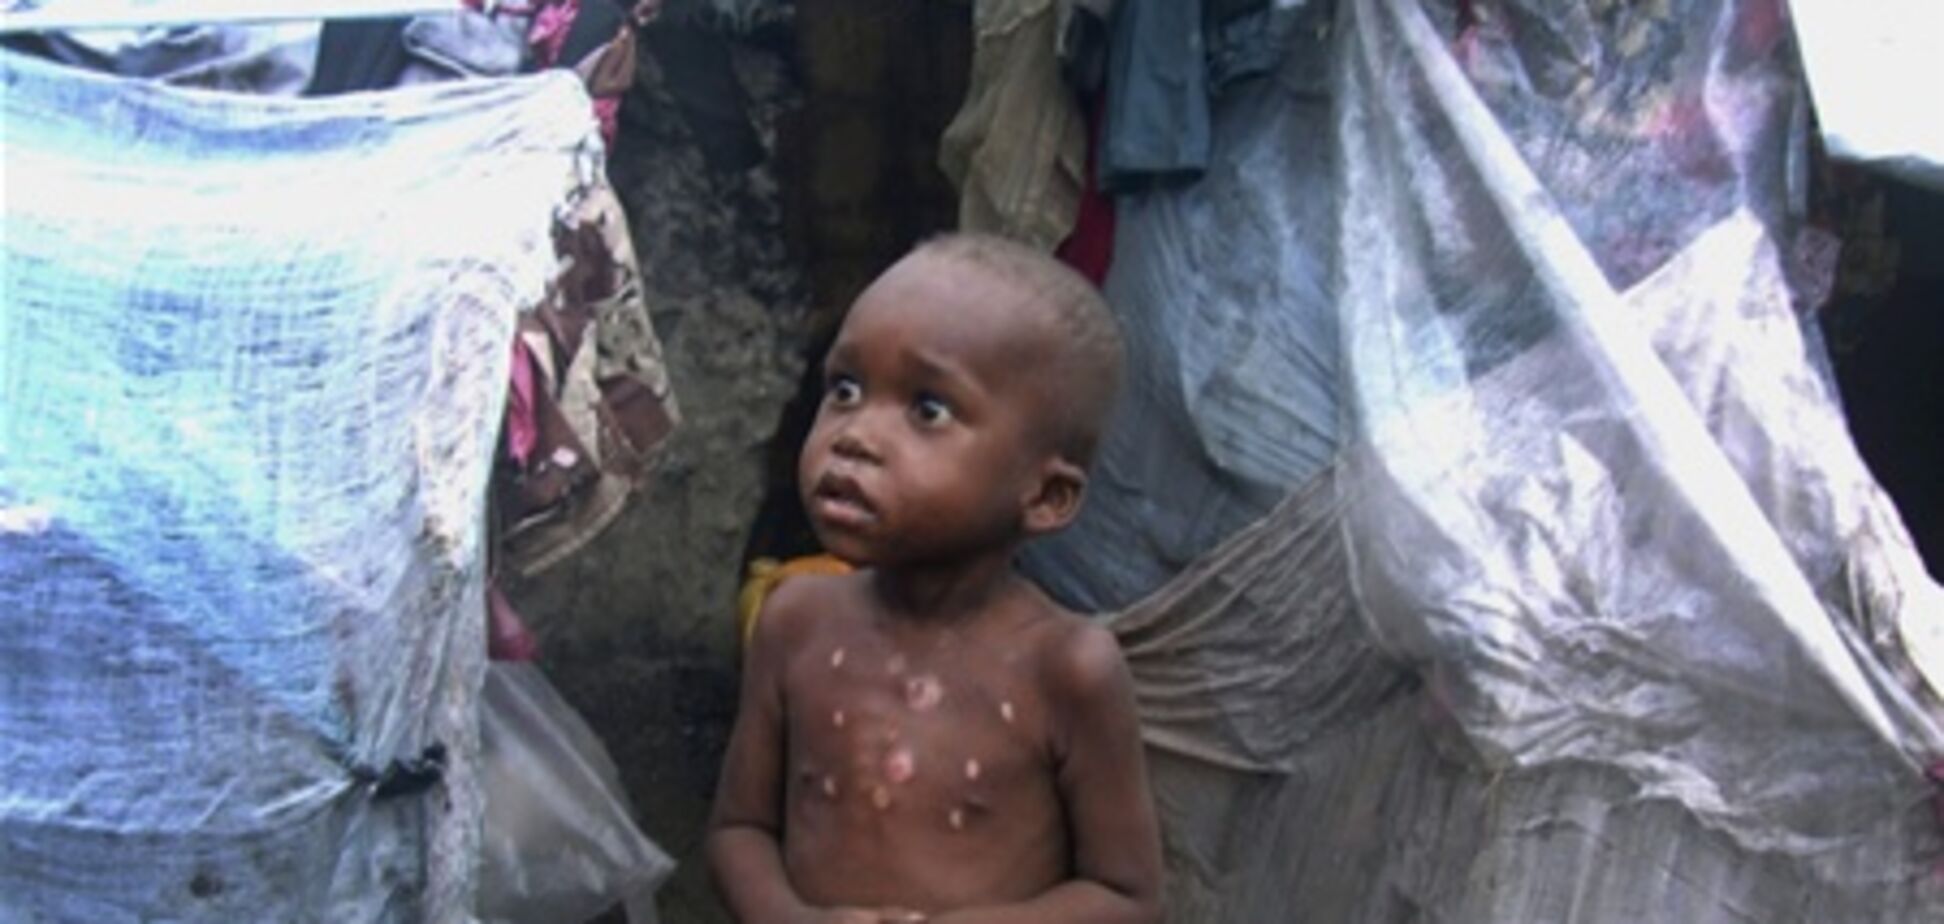 ООН: в Сомали голодают почти 4 млн жителей